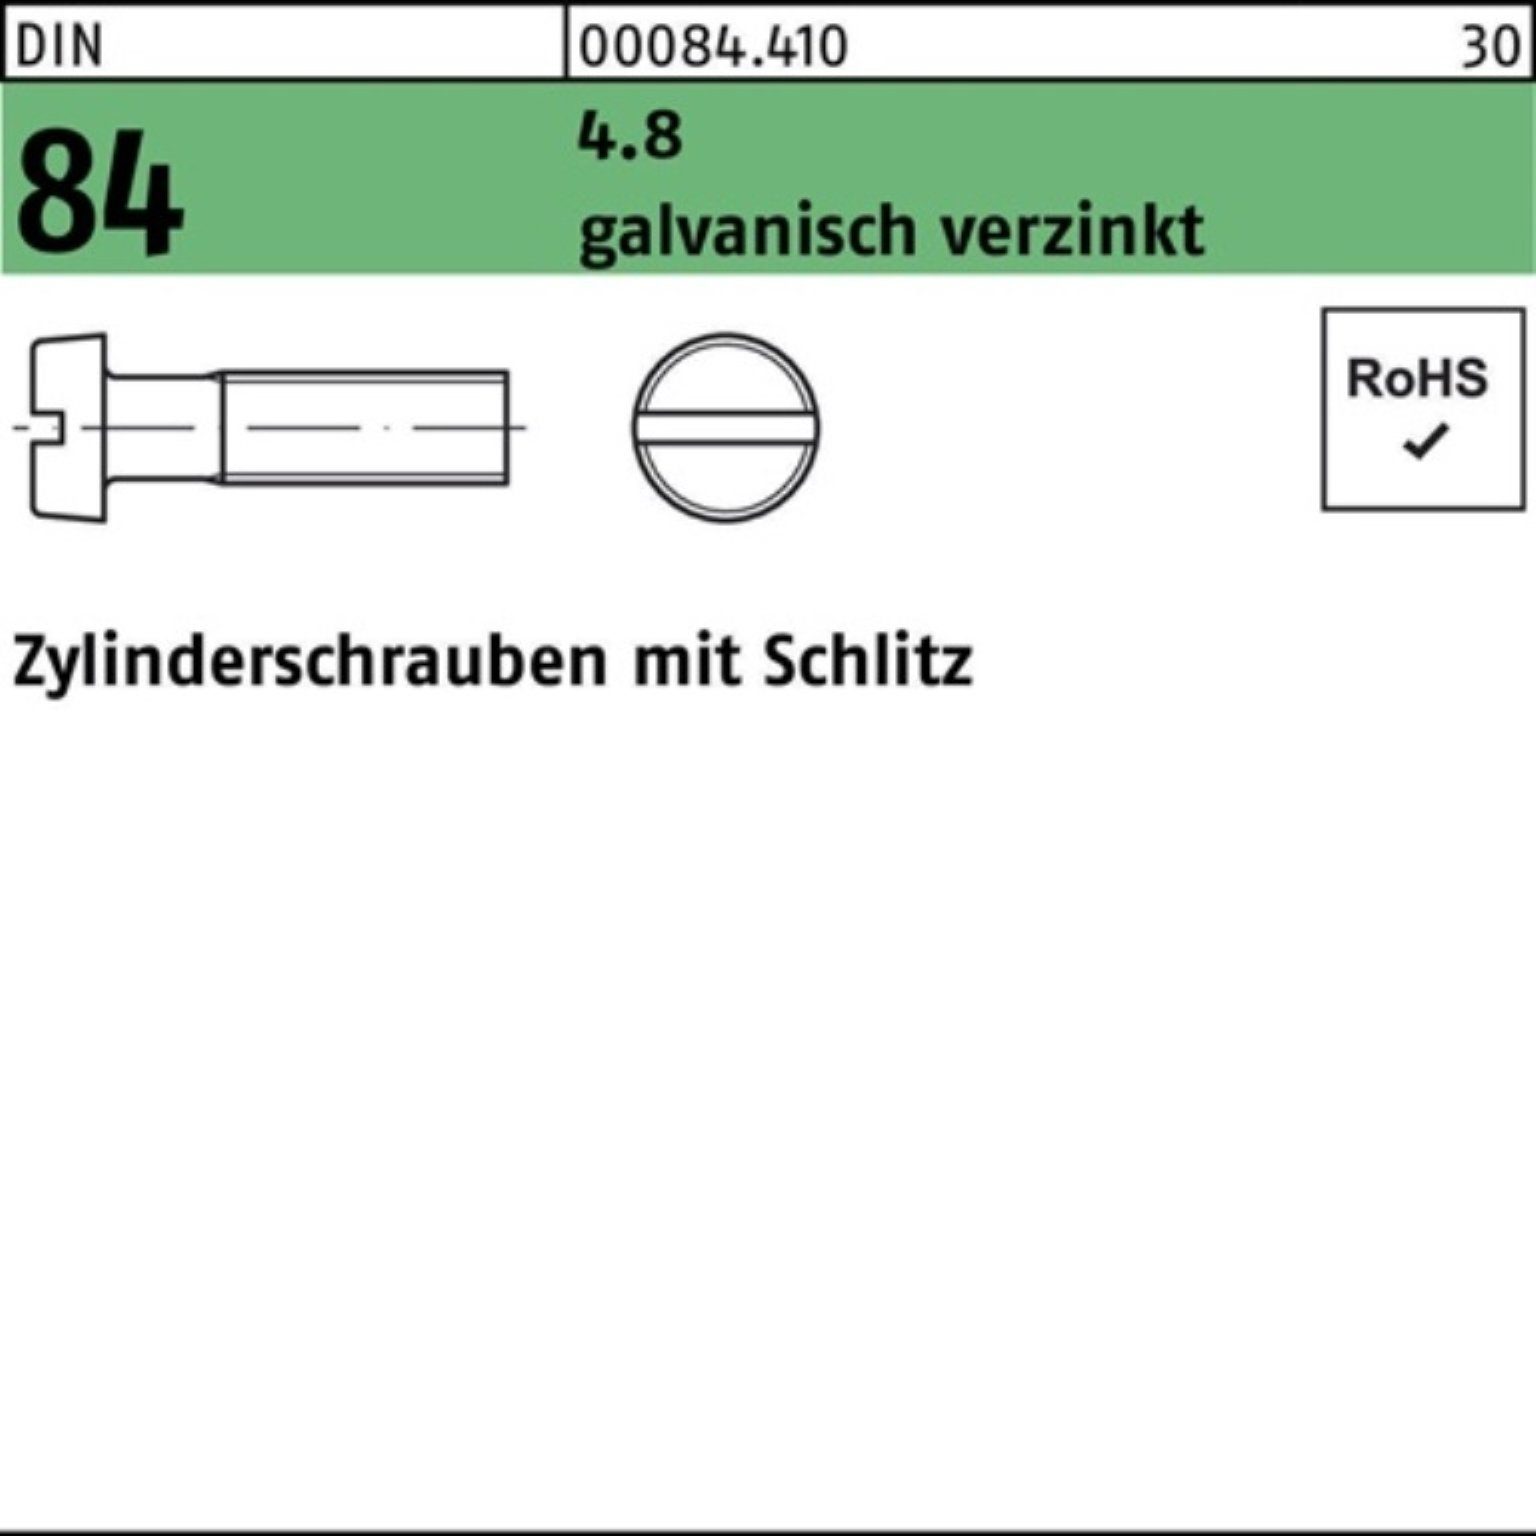 Pack 8 galv.ver Reyher 4.8 Zylinderschraube 1207 200er Schlitz 84/ISO Zylinderschraube DIN M6x